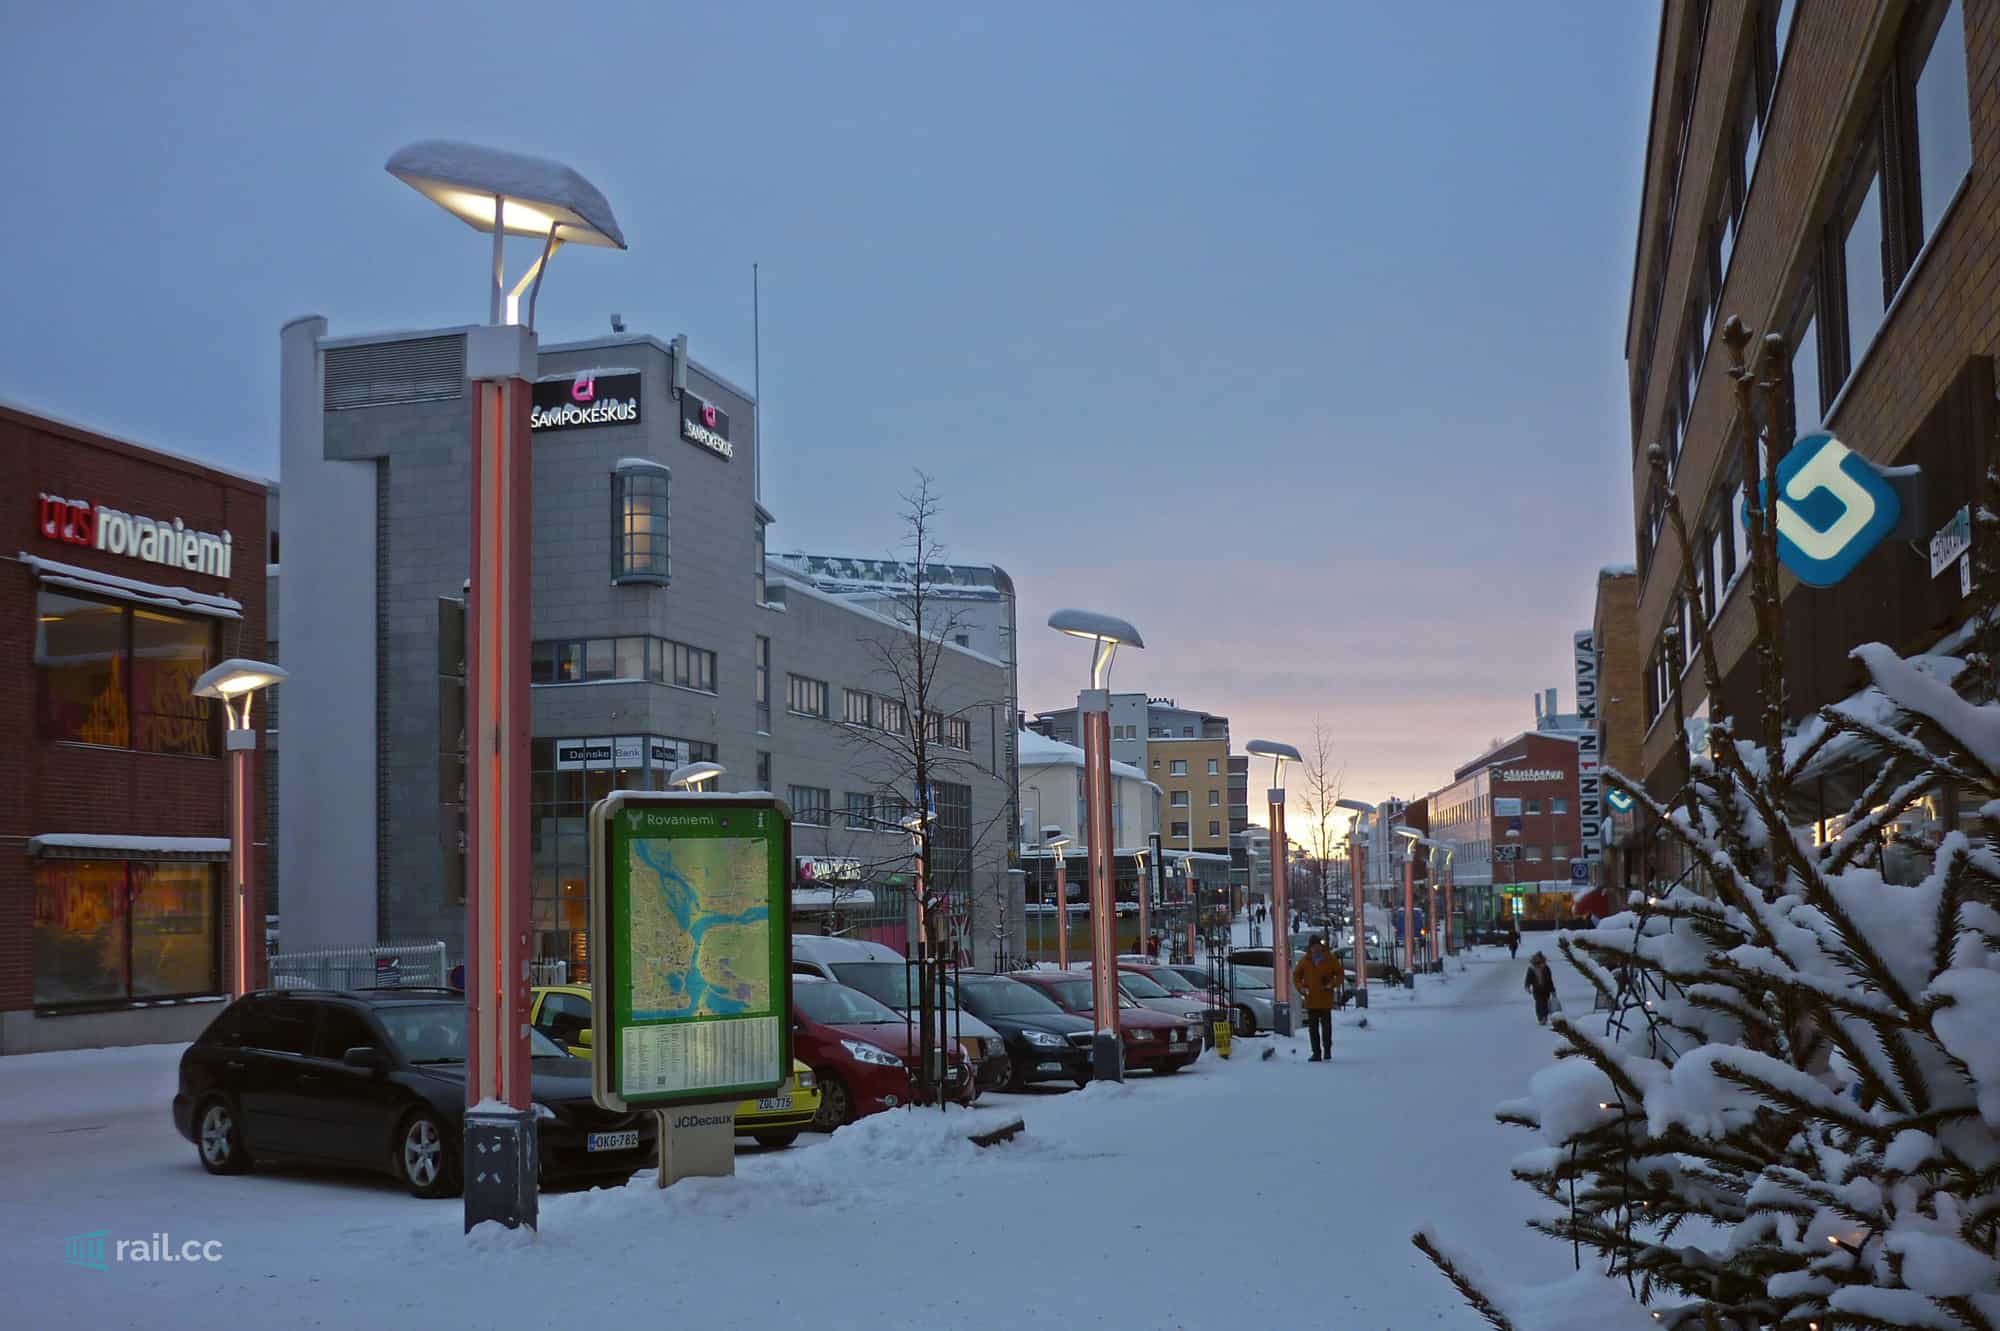 Rovaniemi in Lapland, Finland